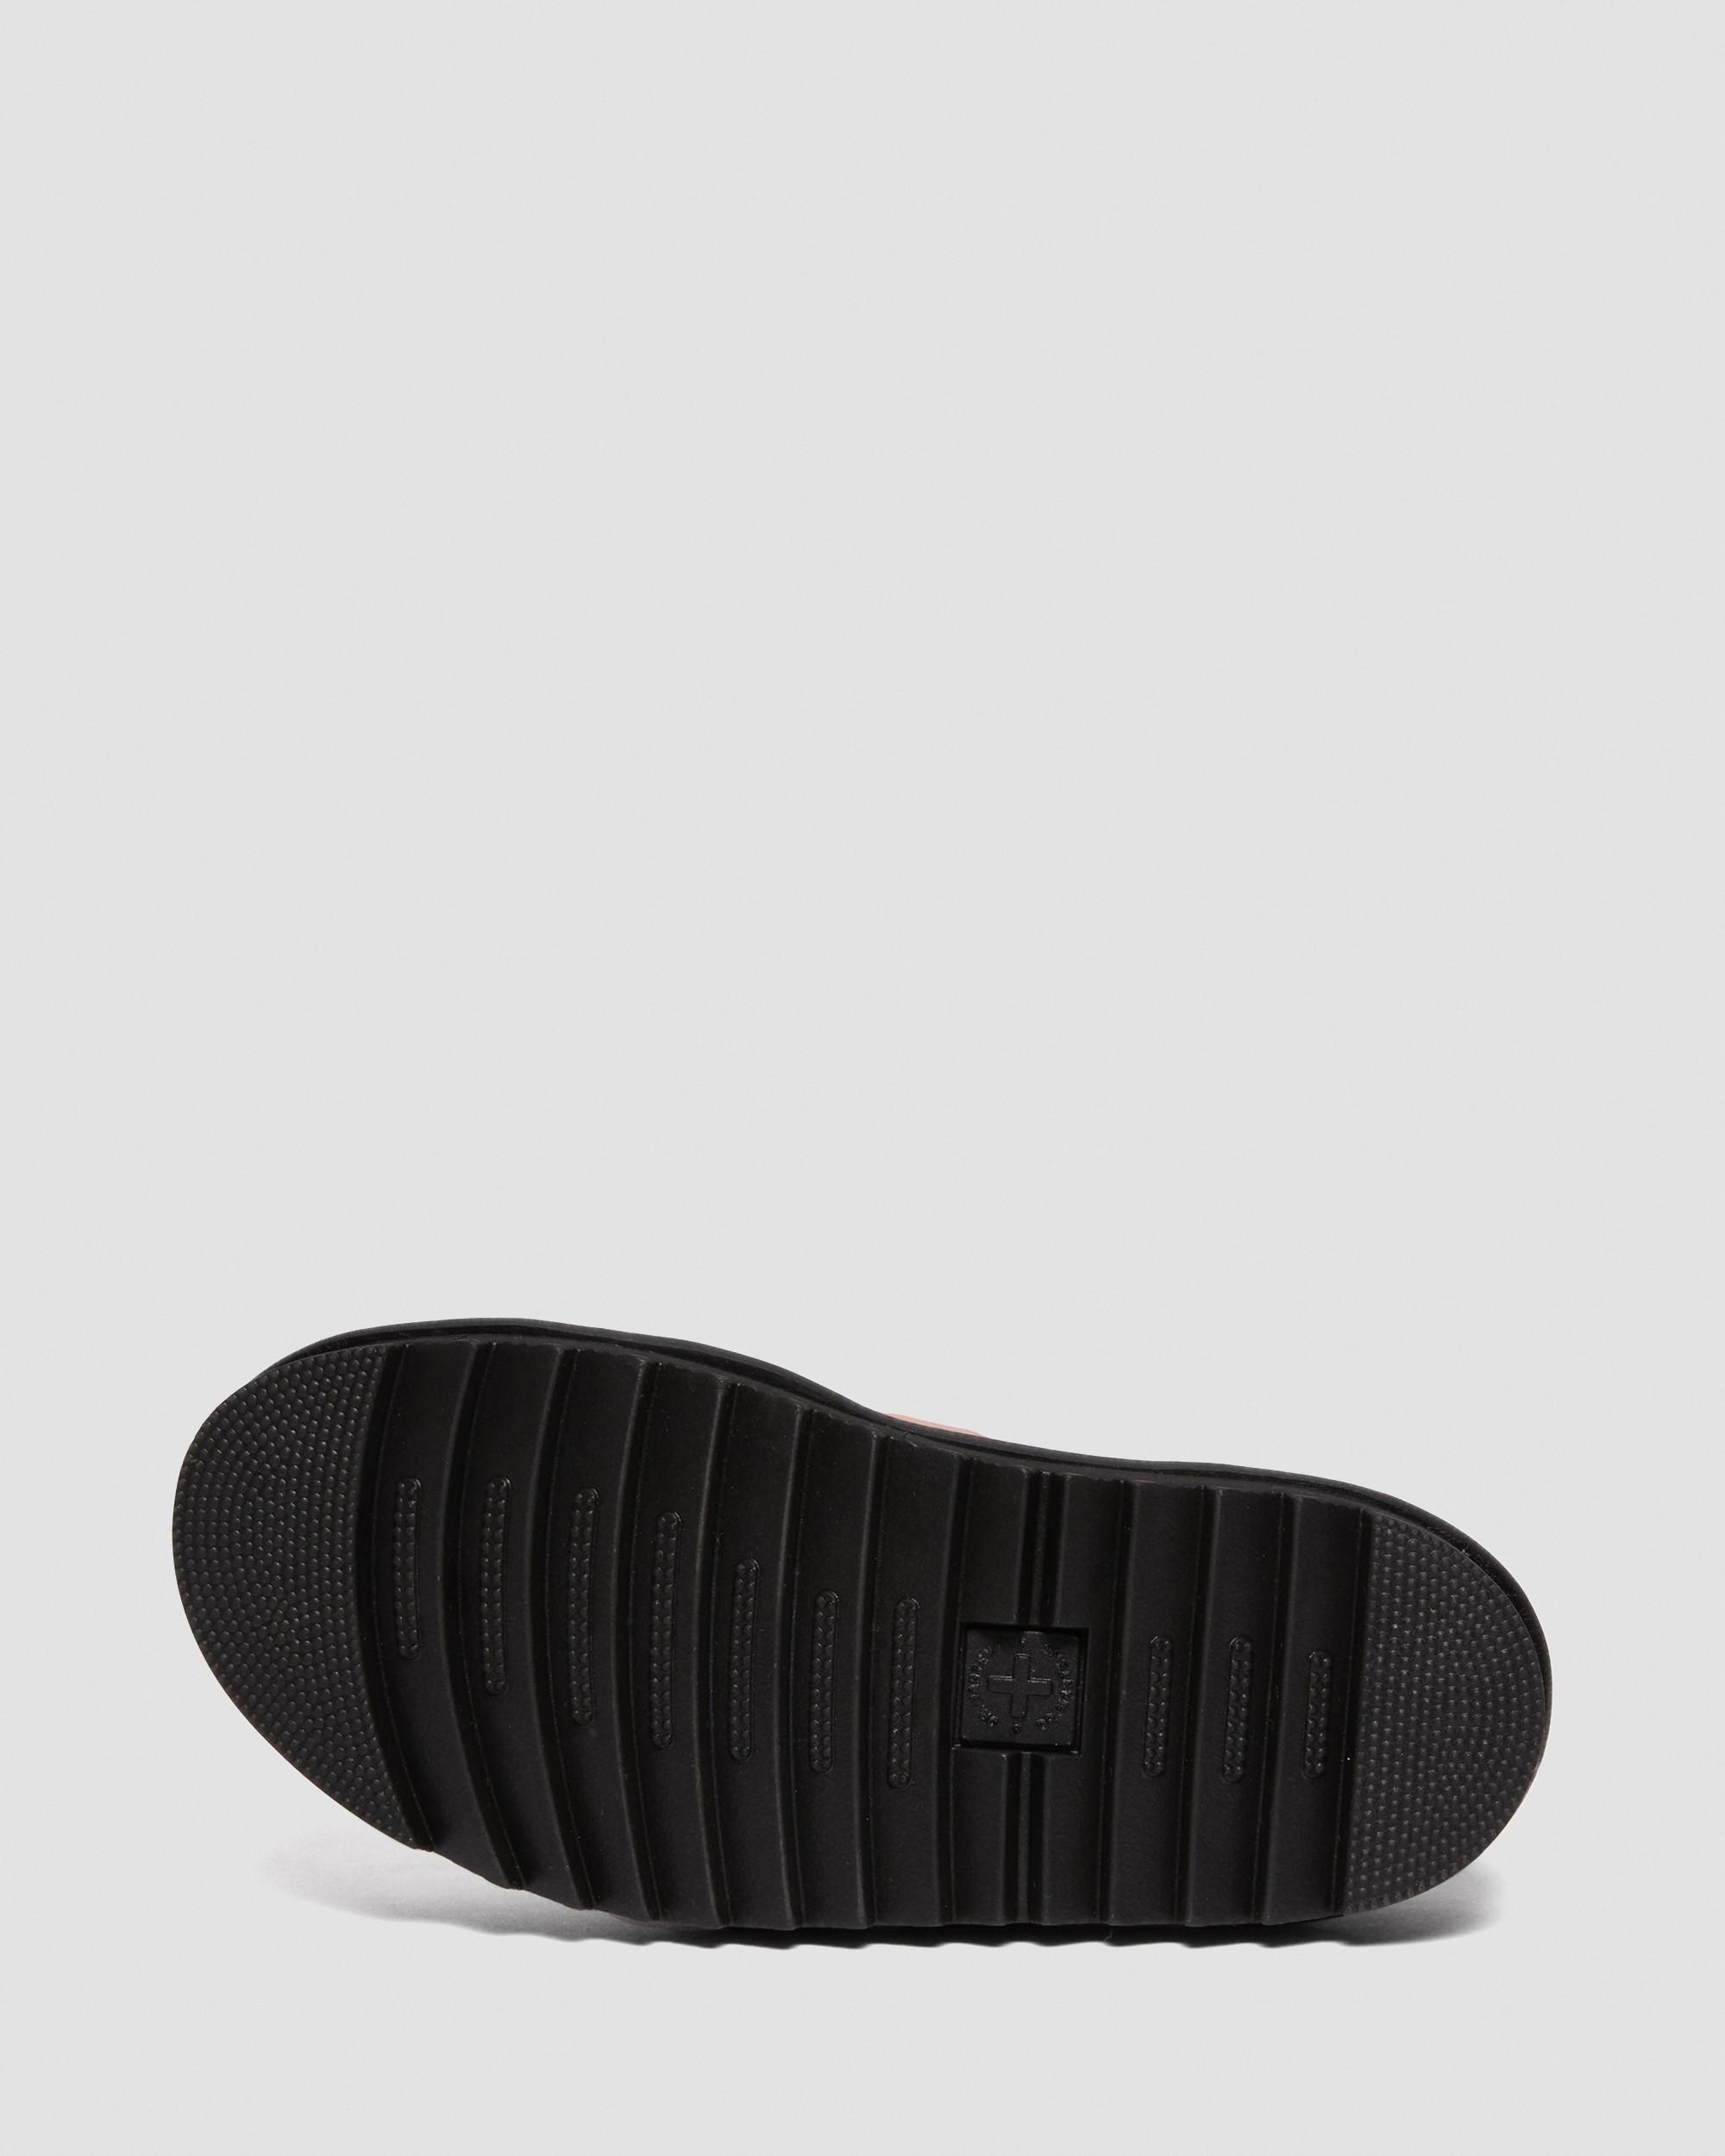 DR MARTENS Blaire Pisa Leather Strap Platform Sandals